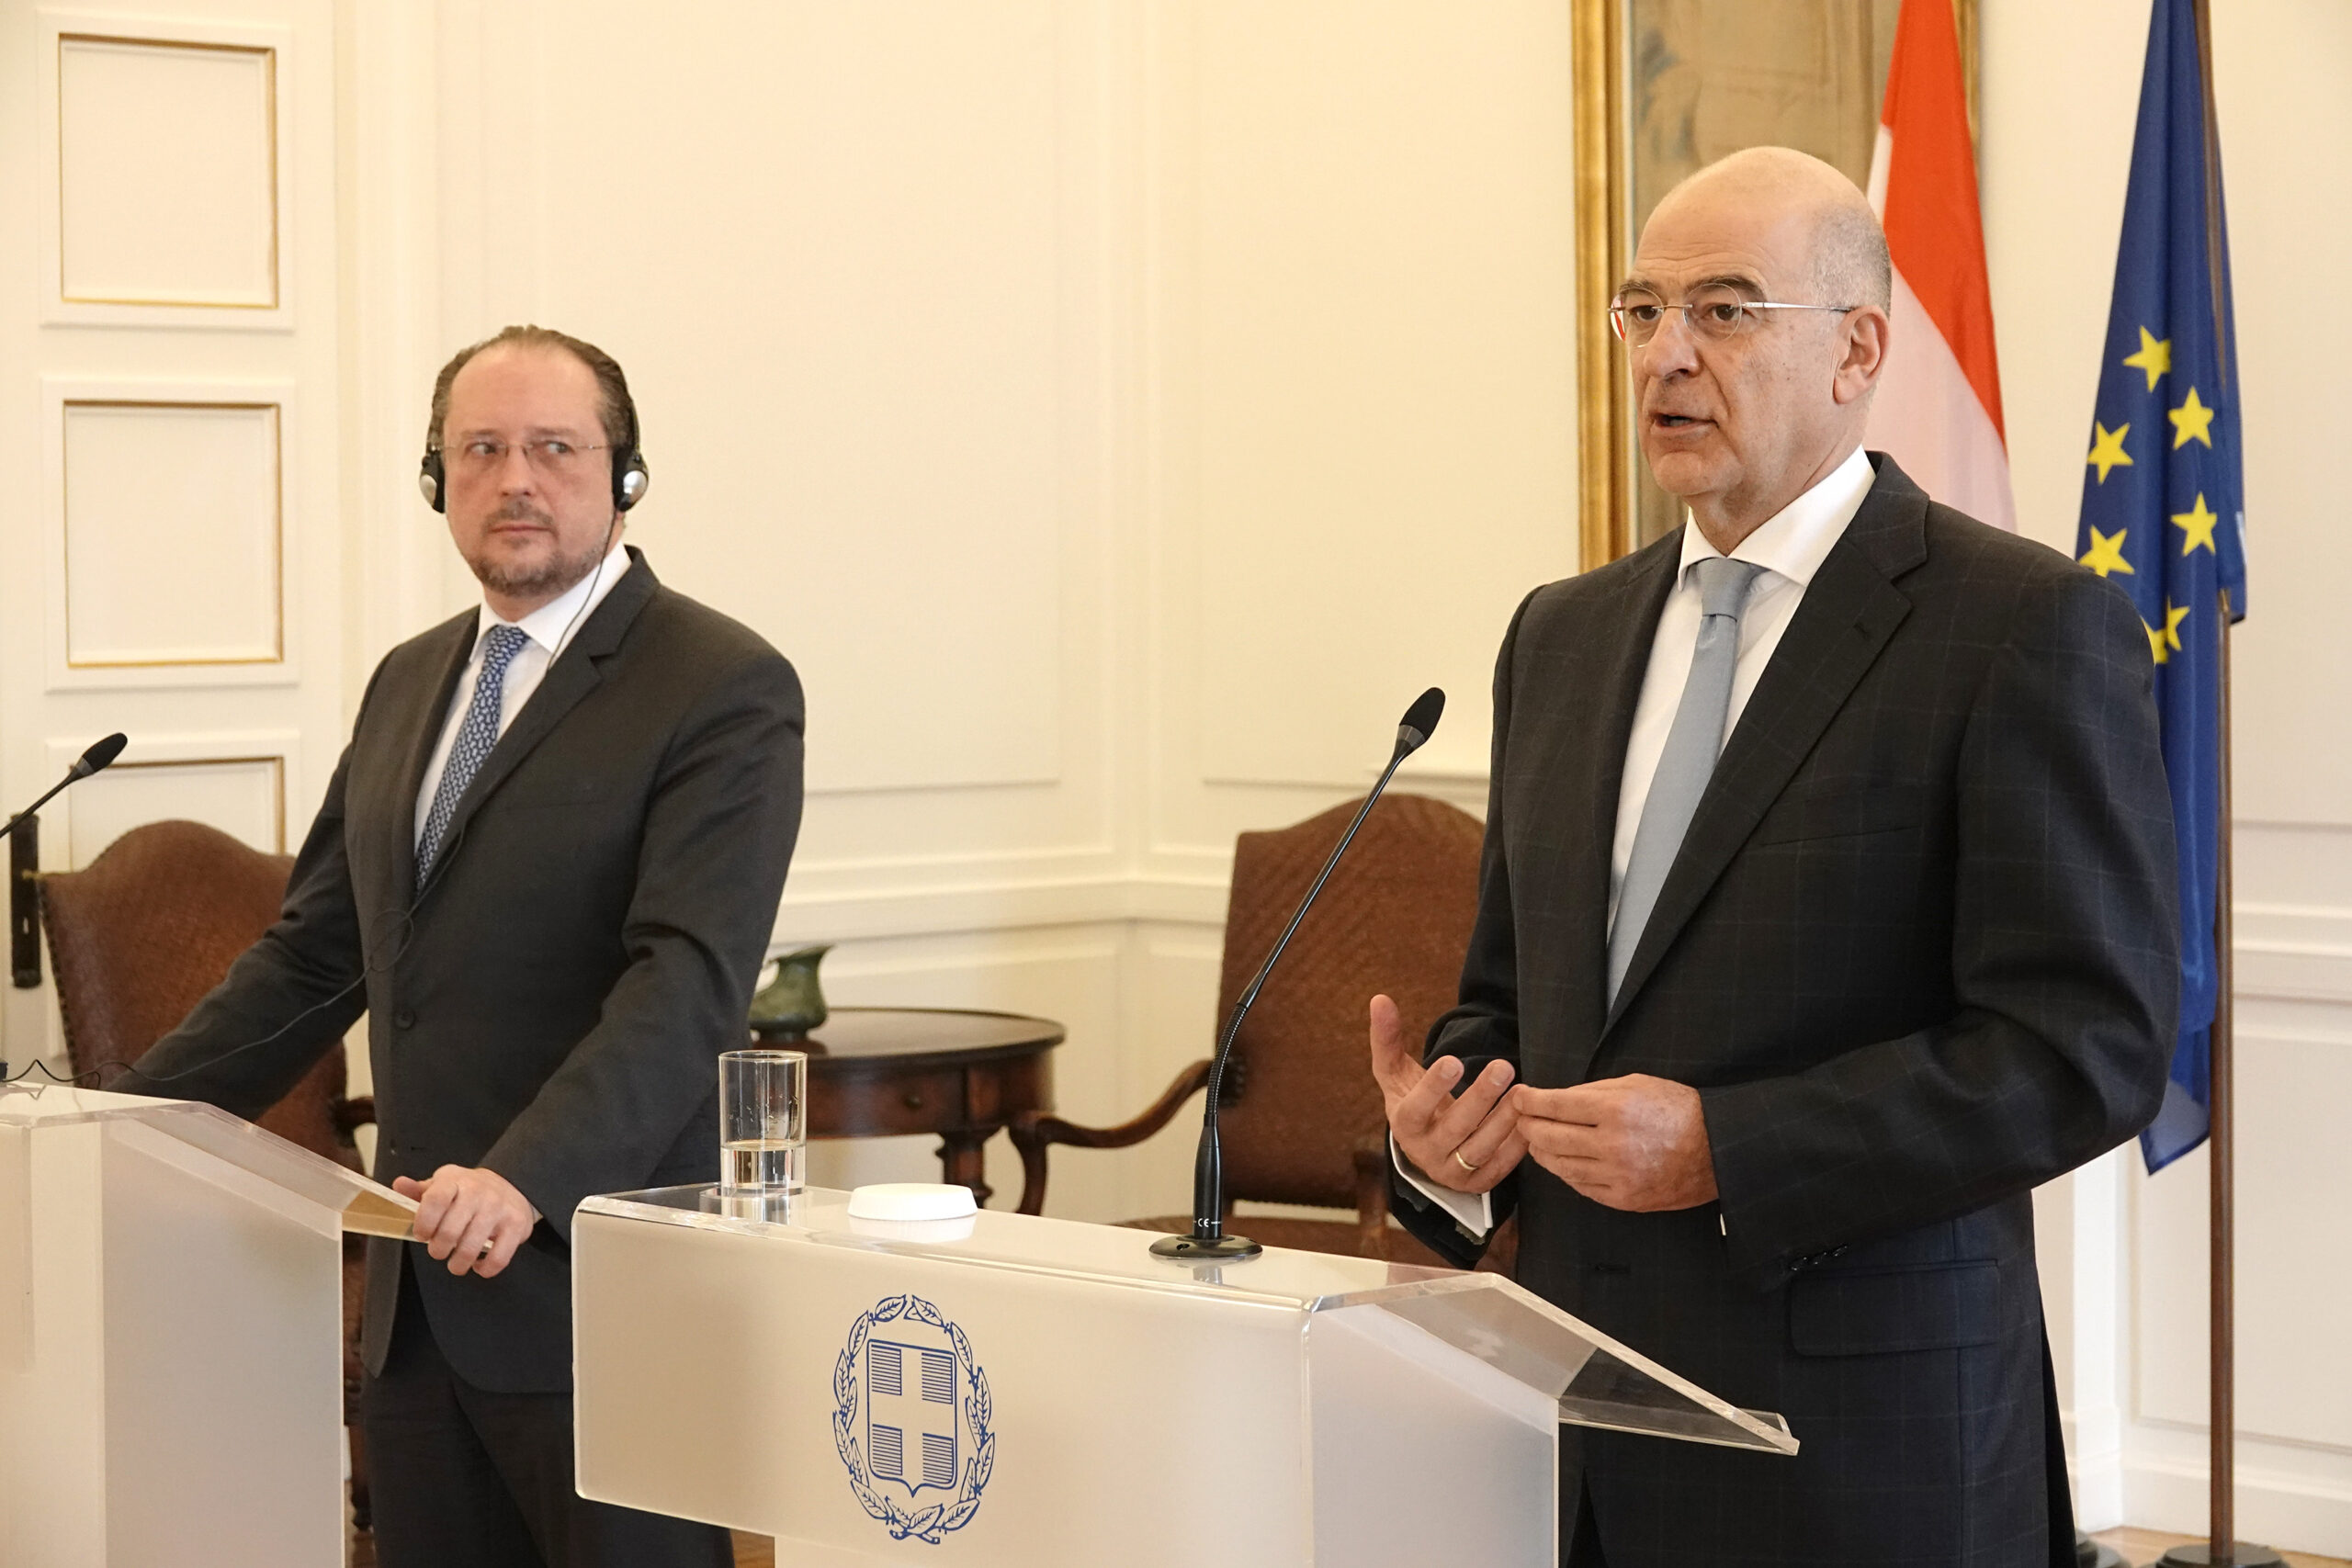 (Ξένη Δημοσίευση). Ο υπουργός Εξωτερικών Νίκος Δένδιας (Δ) με τον Ομοσπονδιακό Υπουργό Ευρωπαϊκών και Διεθνών Υποθέσεων της Αυστρίας Alexander Schallenberg (Α) κάνουν δηλώσεις στους δημοσιογράφους, μετά τη συνάντηση που είχαν στο Υπουργείο Εξωτερικών στην Αθήνα, Τρίτη 3 Μαρτίου 2020. Οι συζητήσεις αφορούσαν τις τρέχουσες εξελίξεις στο μεταναστευτικό και προσφυγικό ζήτημα. Συζητήσθηκαν επίσης η κατάσταση στην Ανατολική Μεσόγειο, καθώς και η ευρωπαϊκή προοπτική των Δυτικών Βαλκανίων. ΑΠΕ-ΜΠΕ/ΓΡΑΦΕΙΟ ΤΥΠΟΥ ΥΠΕΞ/ΧΑΡΗΣ ΑΚΡΙΒΙΑΔΗΣ